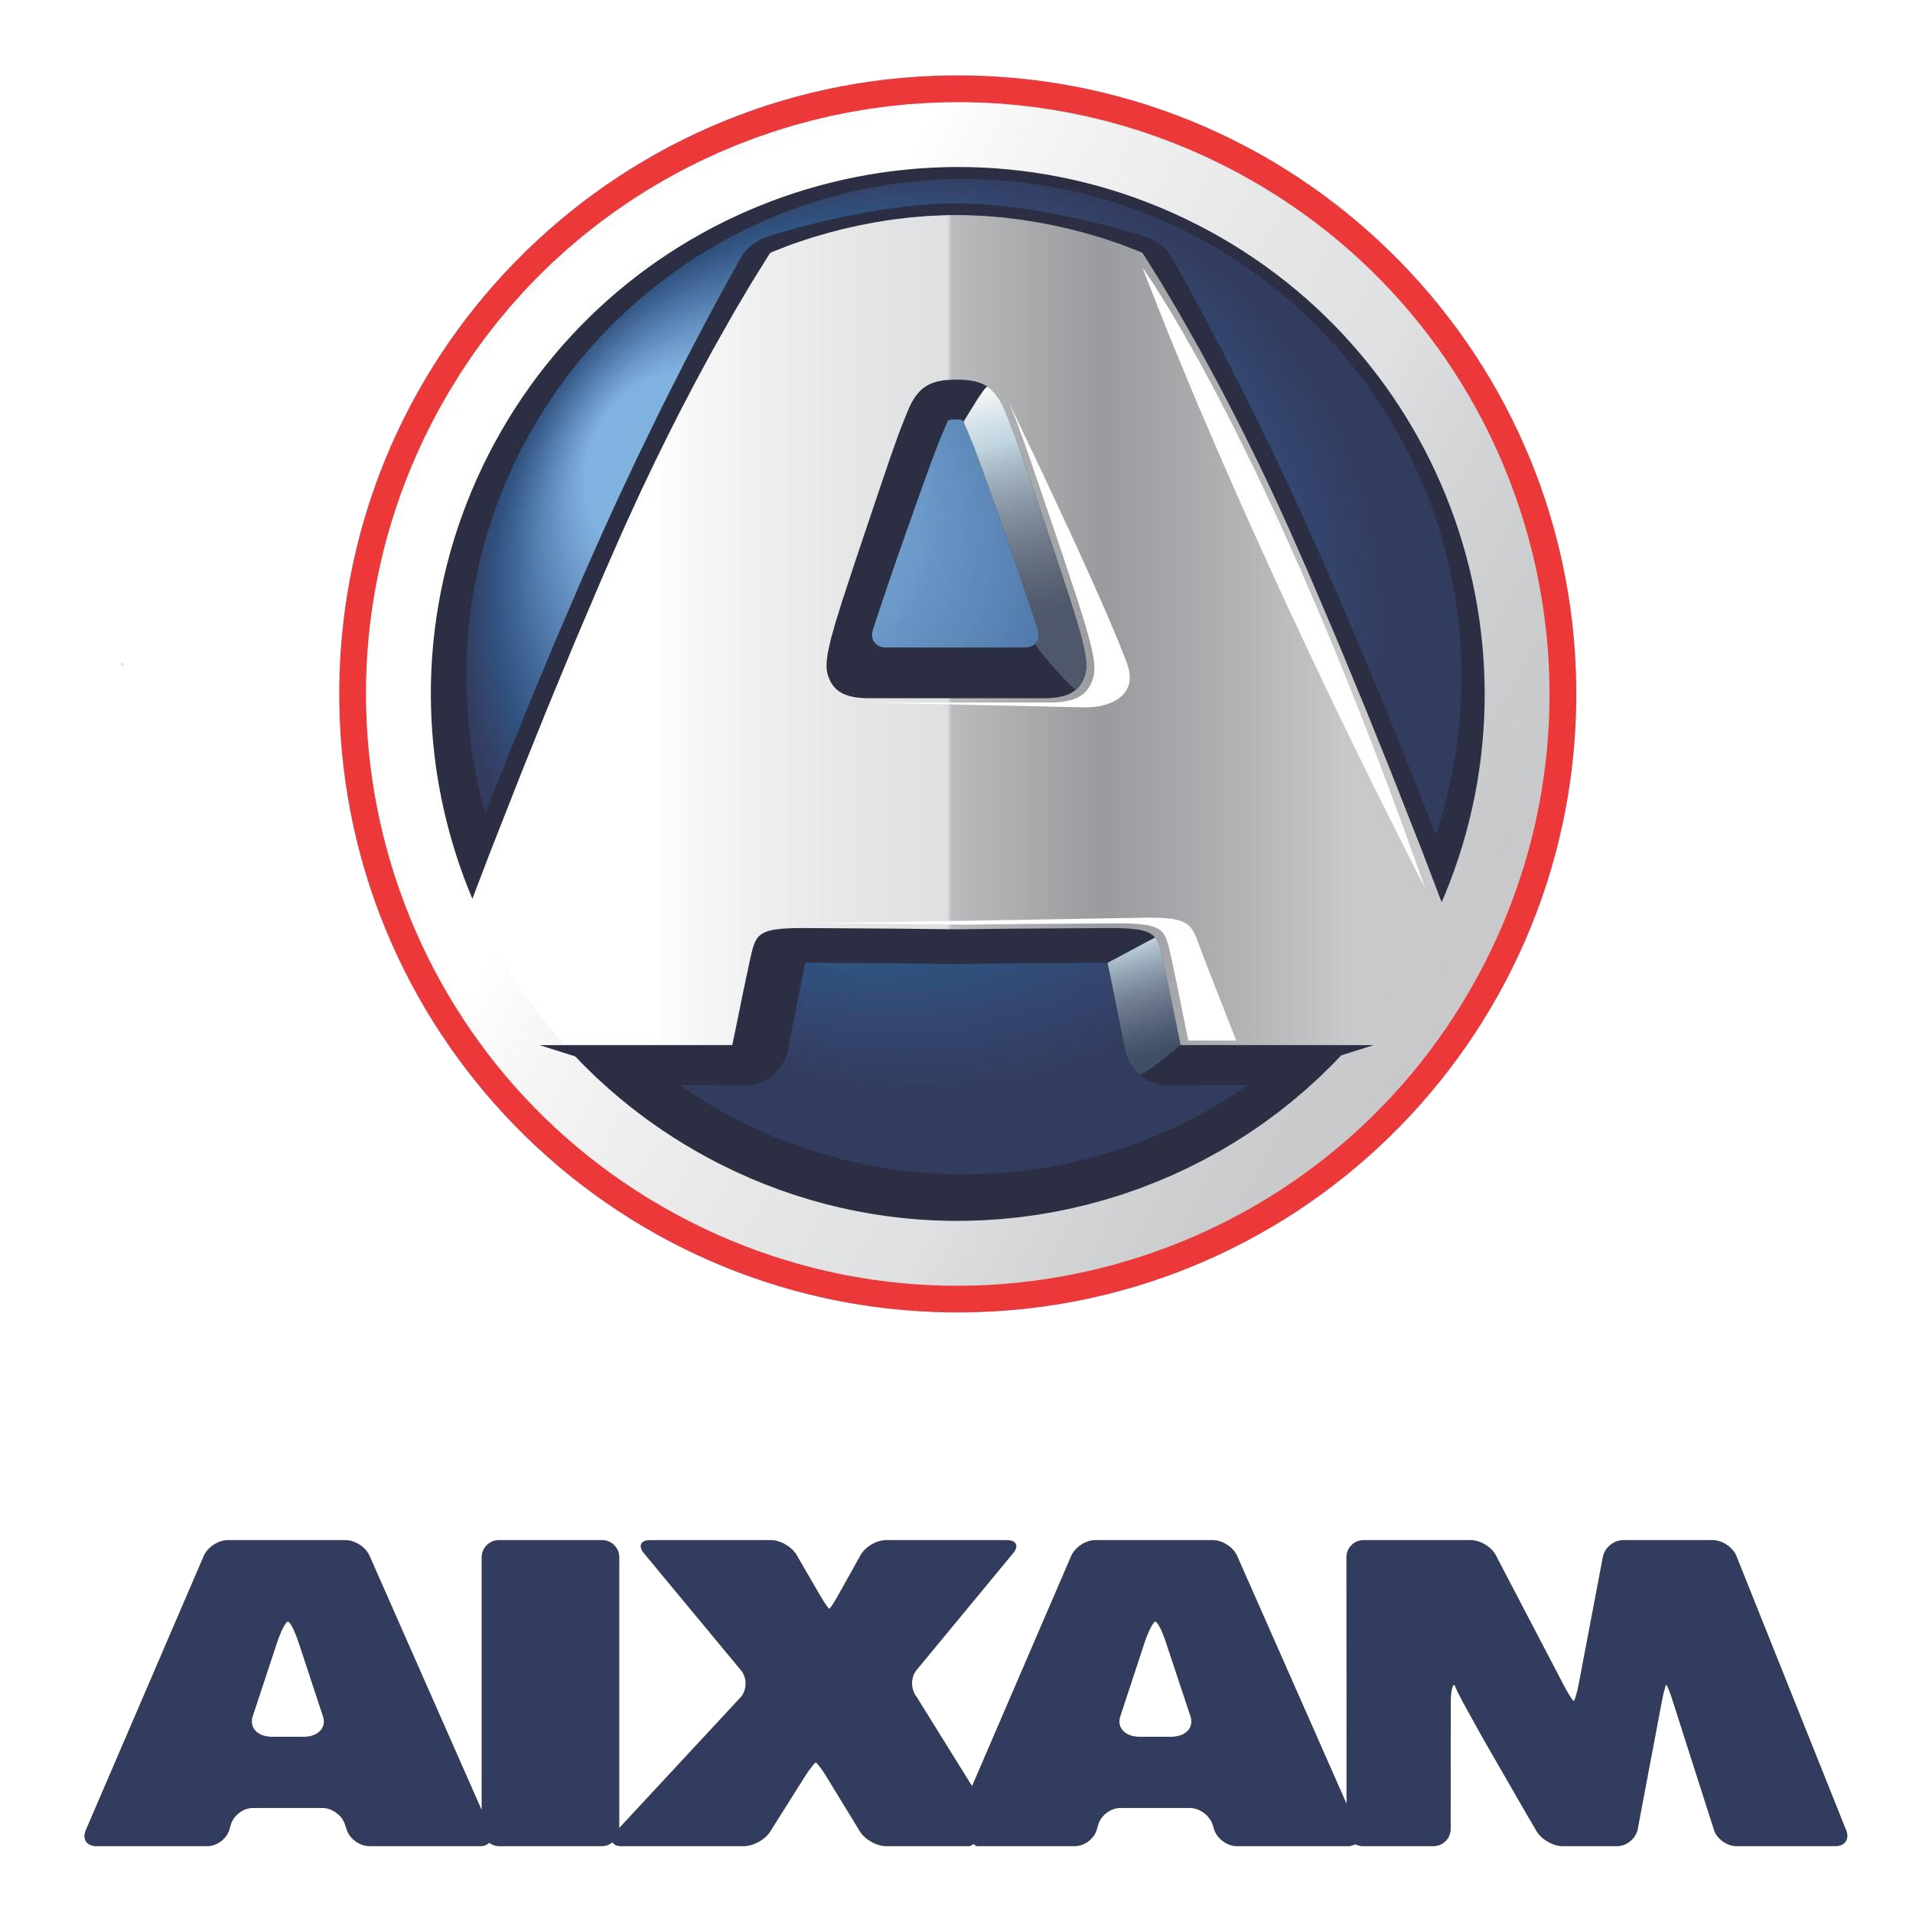 AIXAM - ha scelto Telematico Accise per la gestione telematica delle accise doganali